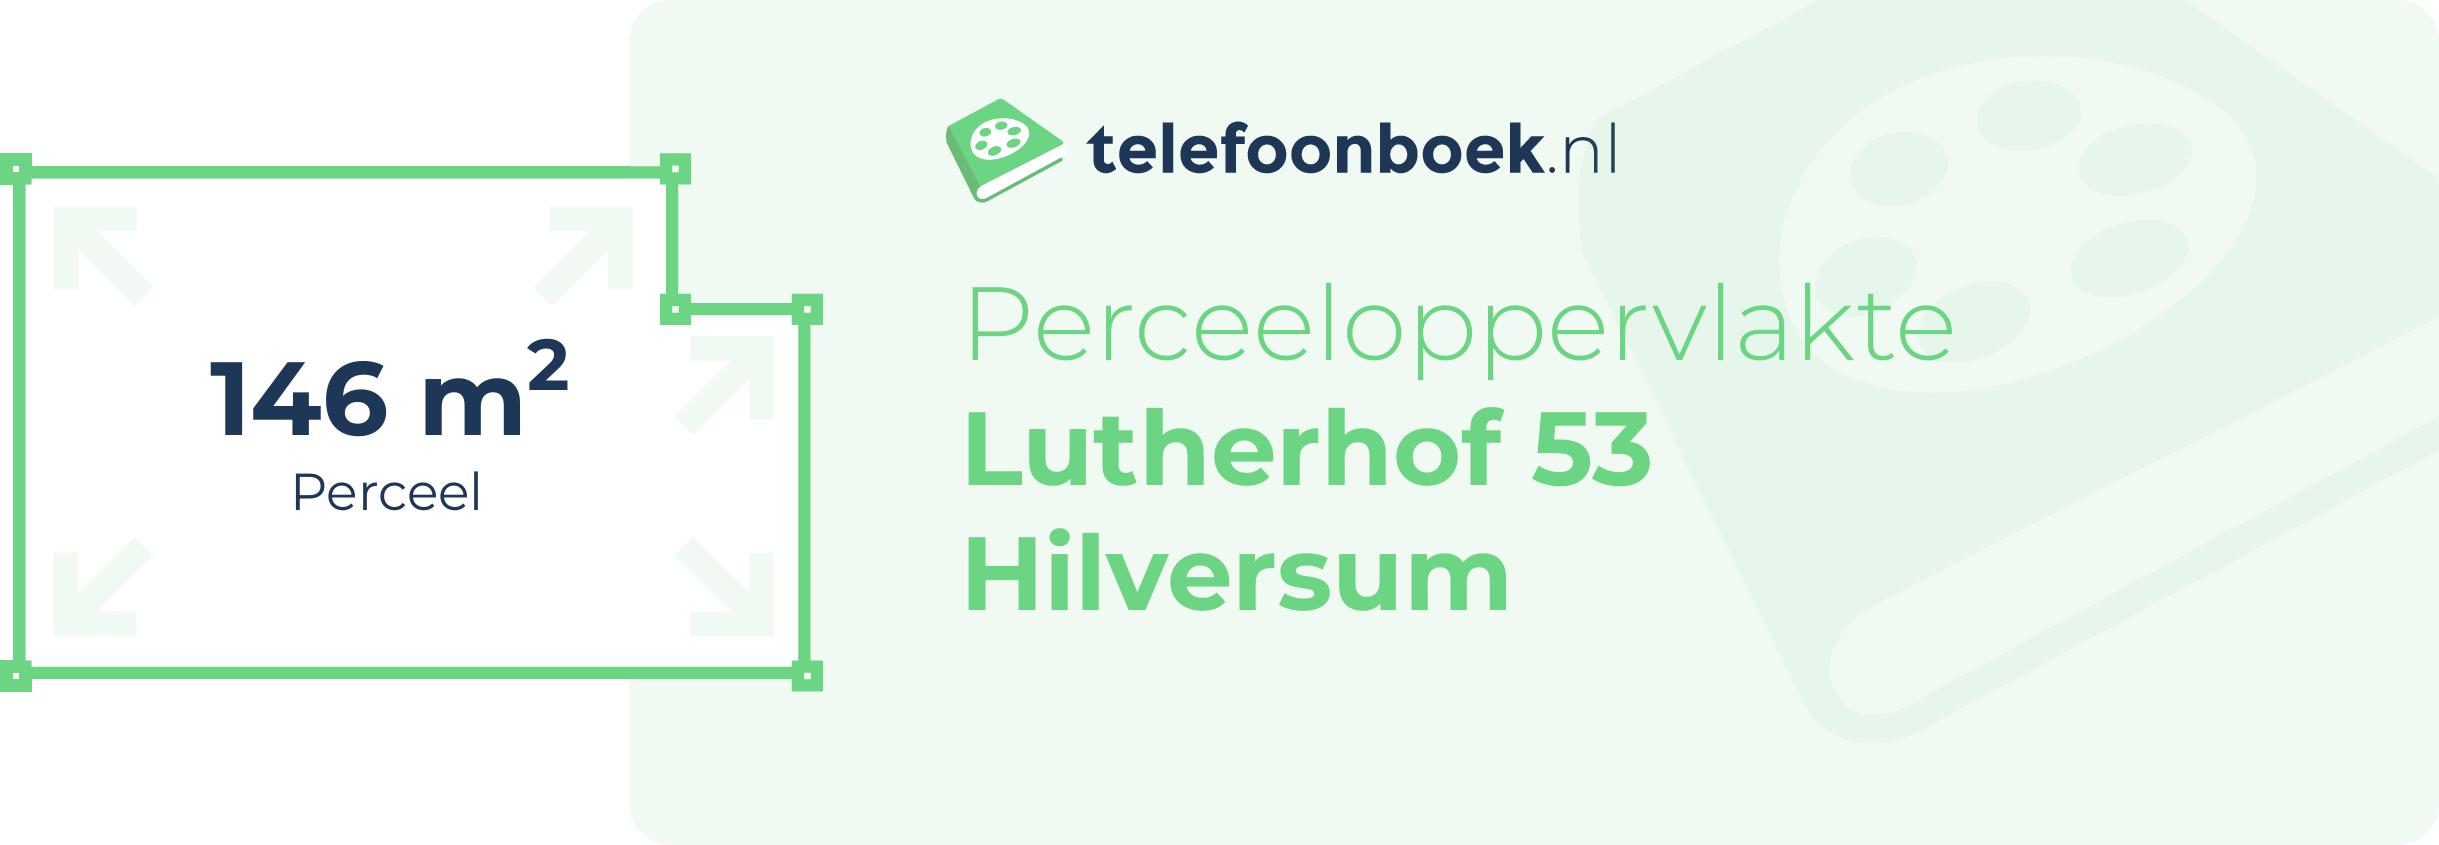 Perceeloppervlakte Lutherhof 53 Hilversum